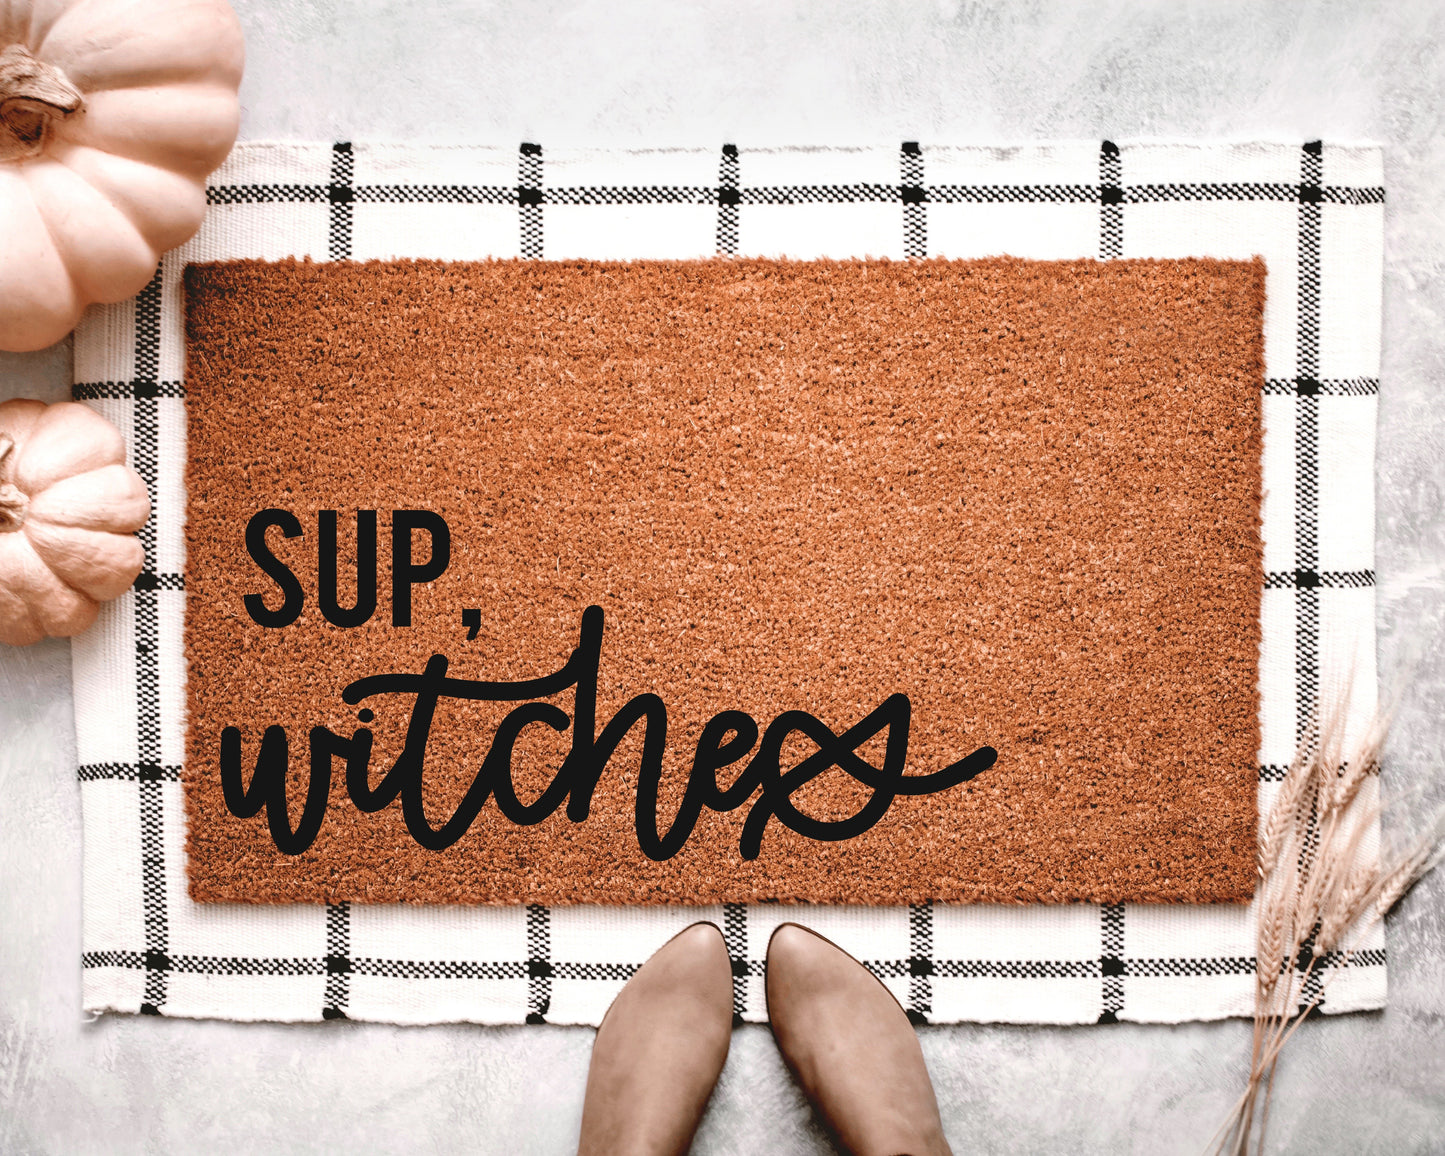 Sup, Witches Doormat